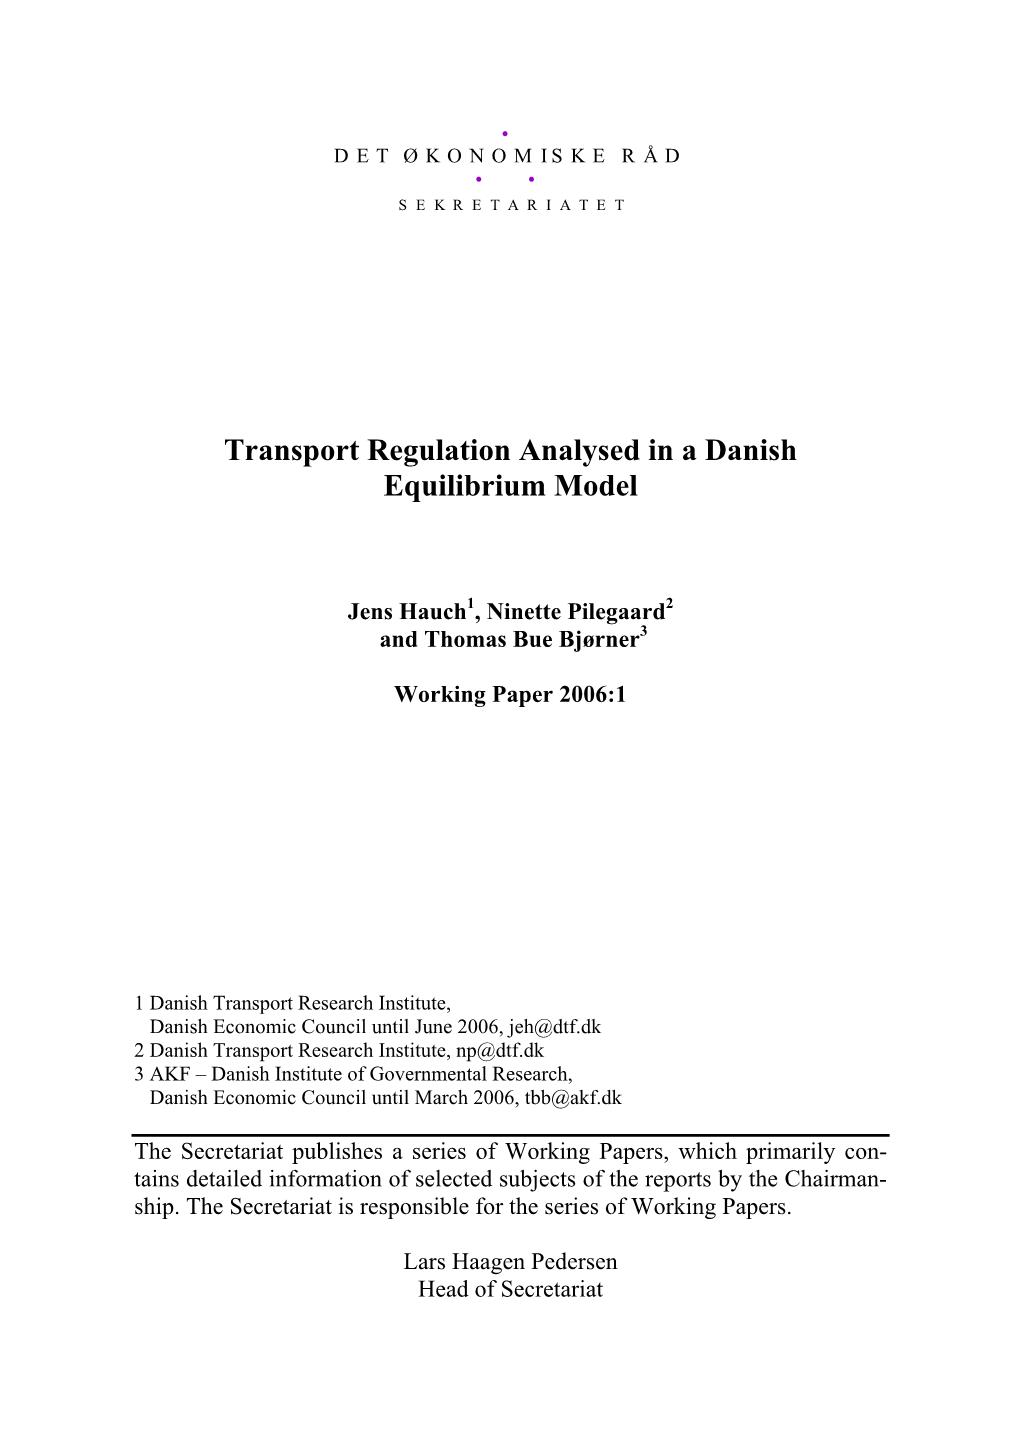 Transport Regulation Analysed in a Danish Equilibrium Model